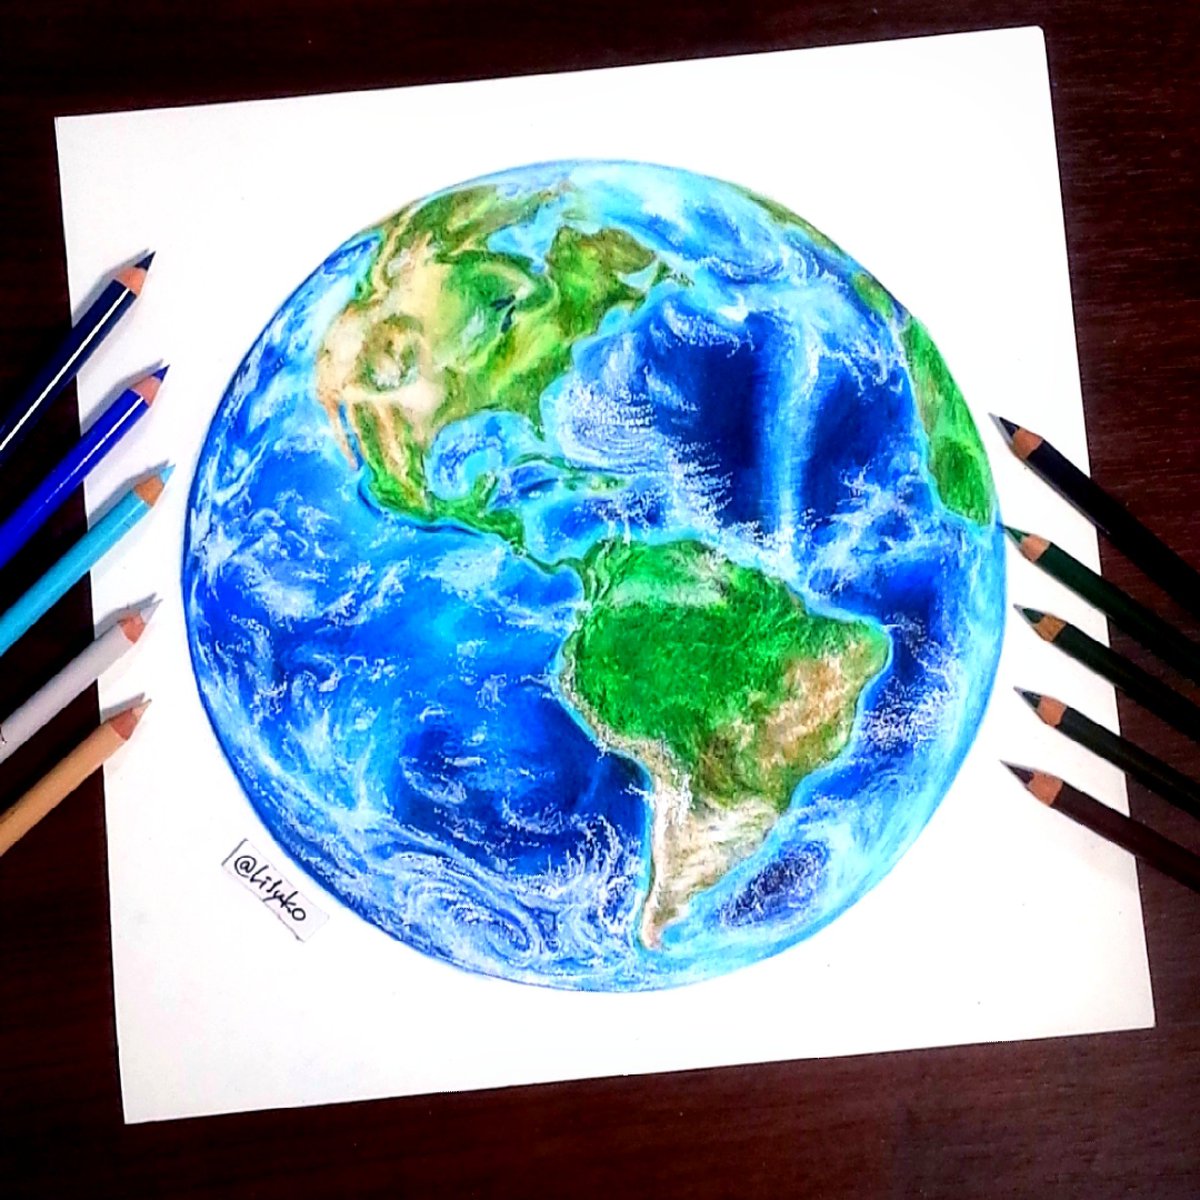 りりぃさん 色鉛筆画 美しい地球を描きたくて 描いたはいいけど載せるの忘れてて 今頃w 大陸は割と細かく描き込んだけど見事に潰れた 綺麗なﾌﾞﾙｰが出せて良かった 地球万歳 色鉛筆 地球 Drawing Earth